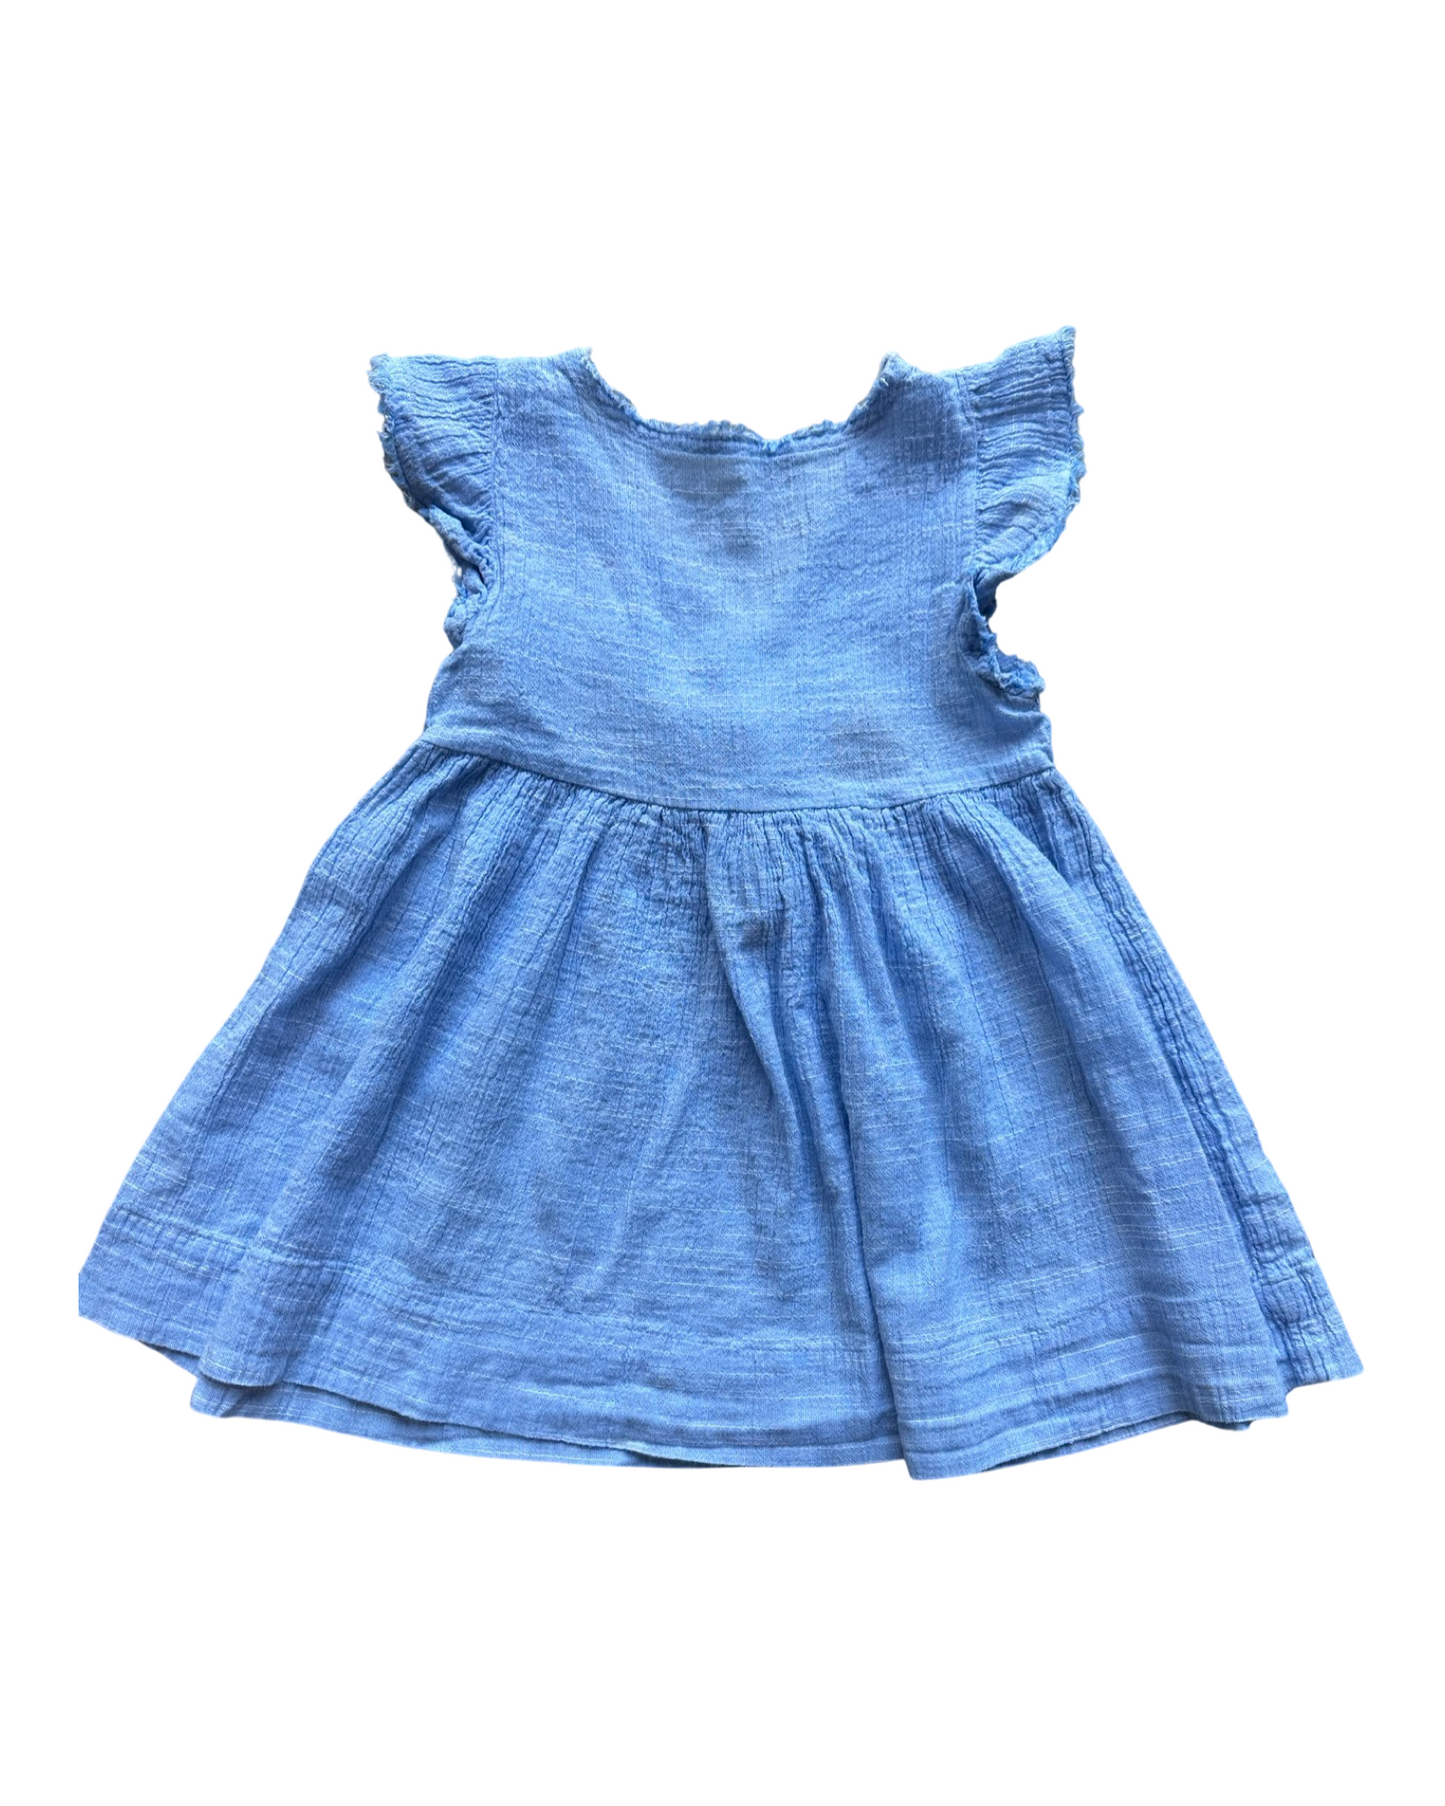 Next baby blue seersucker cotton dress (size 12-18mths)